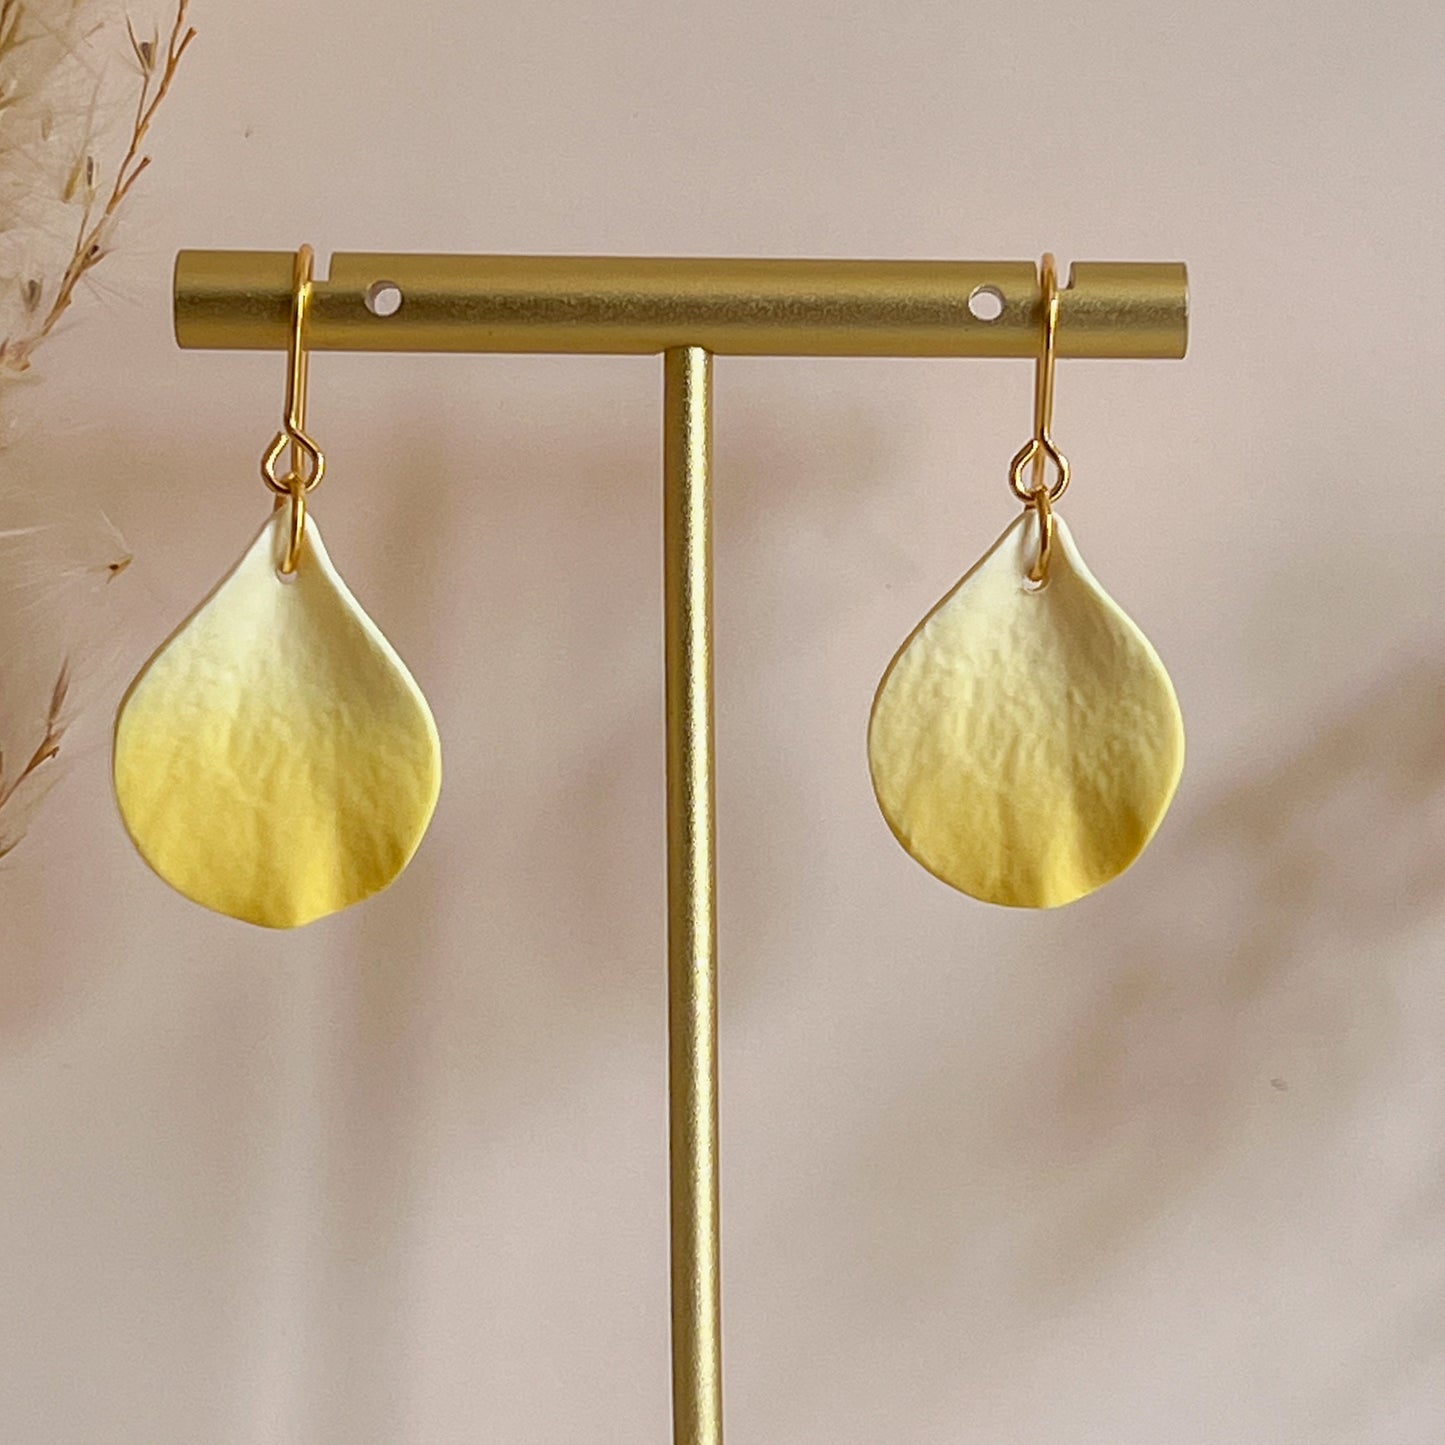 DELEN | small rose petal hook earrings in spring yellow ombré